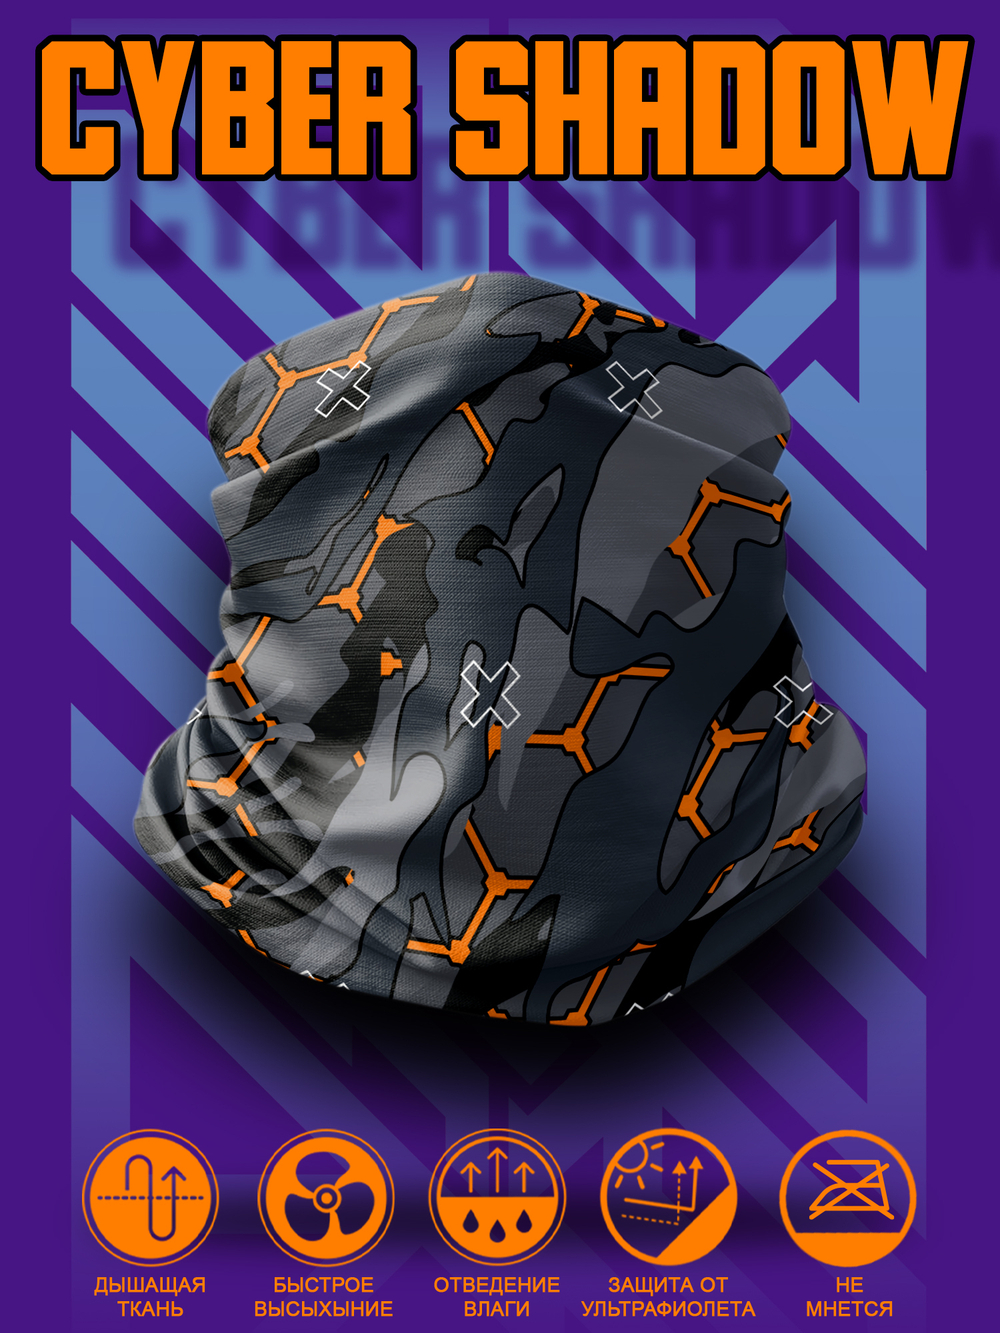 Маска бафф Cyber Shadow Camo. Горпокор аксессуар с уникальным рисунком камуфляжа.